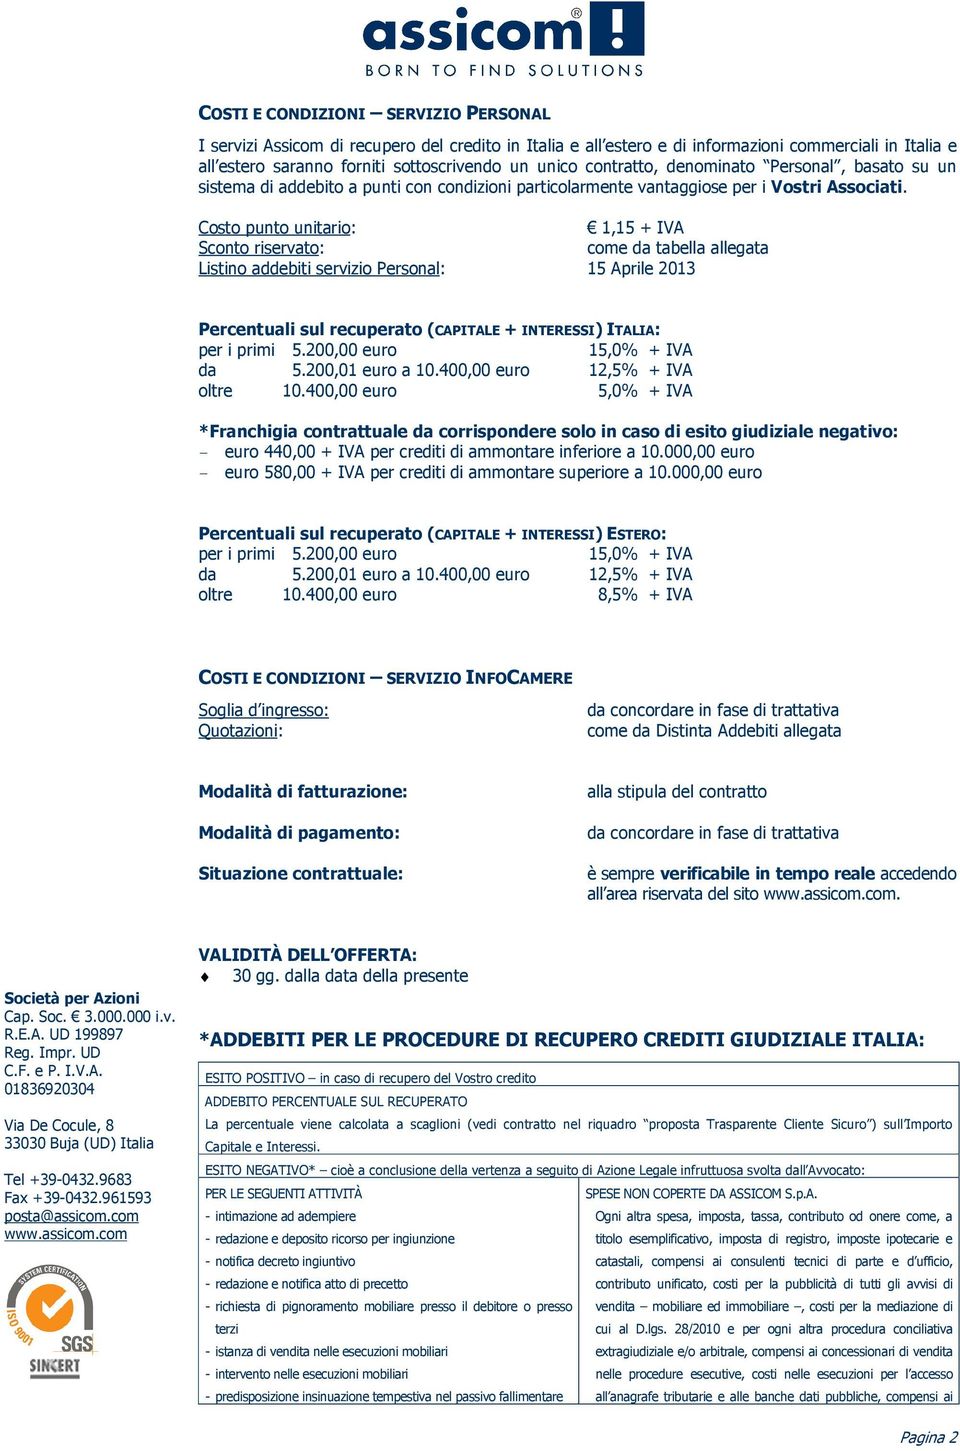 Costo punto unitario: 1,15 + IVA Sconto riservato: come da tabella allegata Listino addebiti servizio Personal: 15 Aprile 2013 Percentuali sul recuperato (CAPITALE + INTERESSI) ITALIA: per i primi 5.